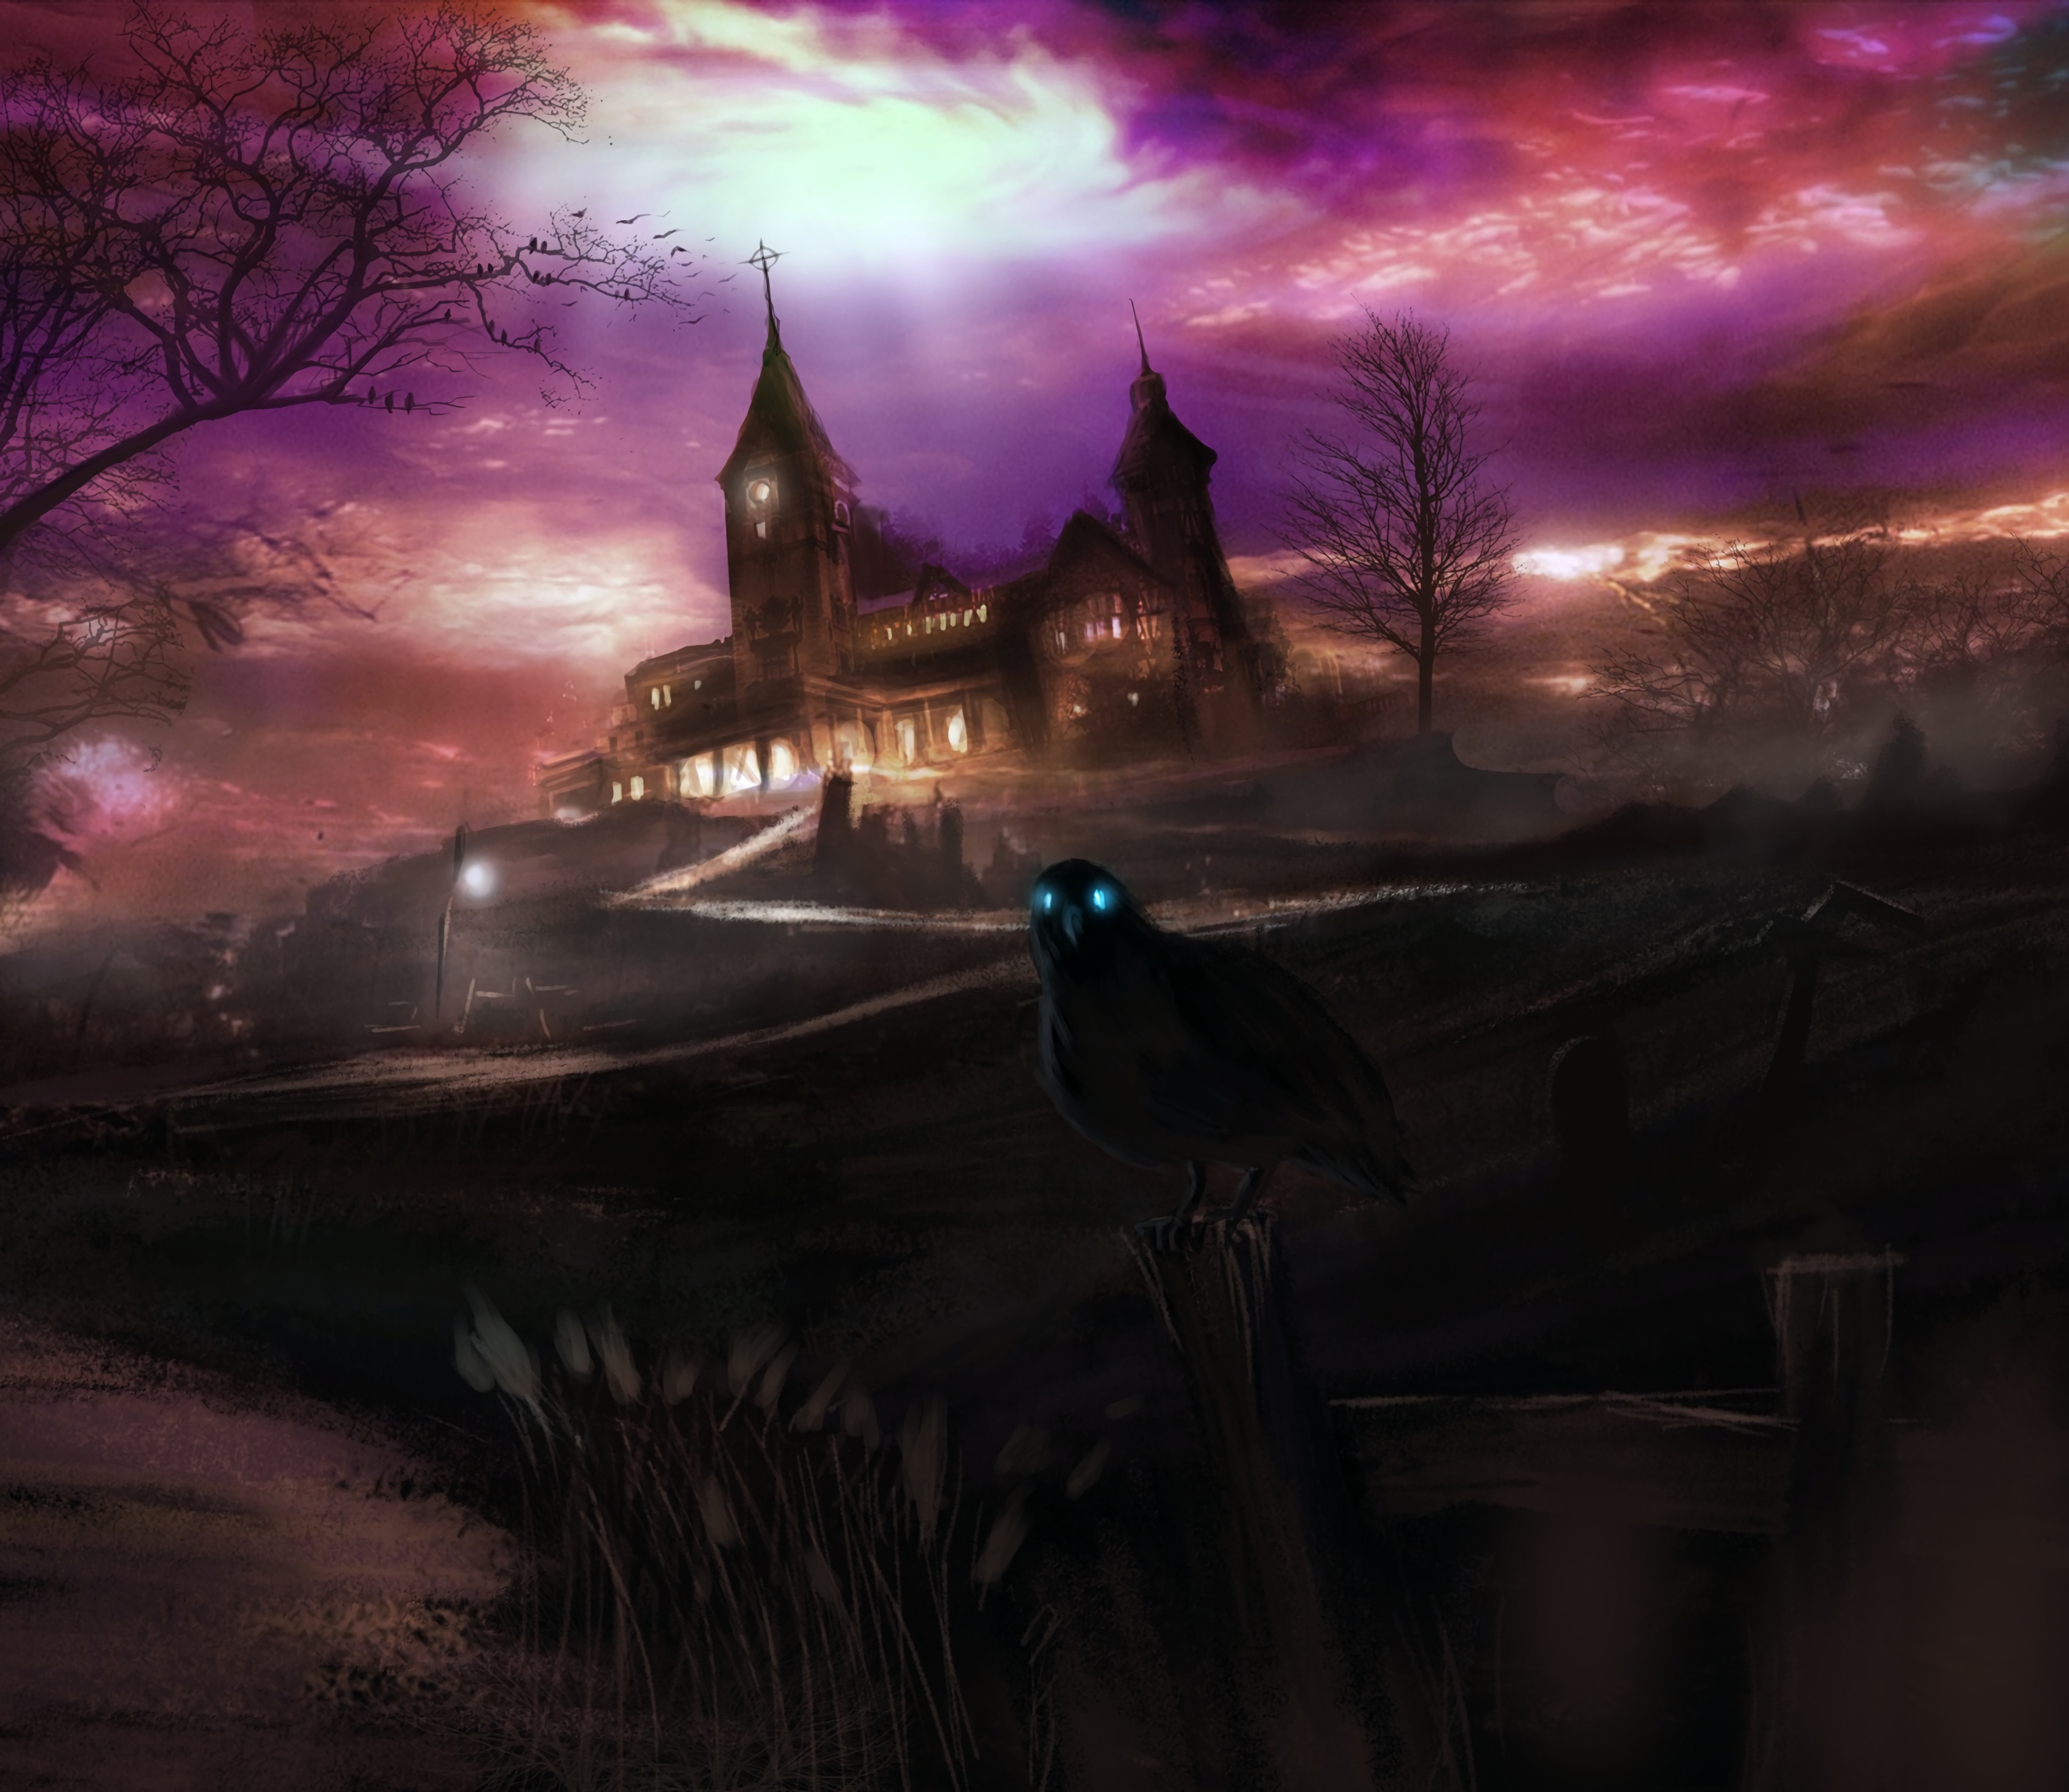 raven, art, dark, house, hill, spooky, eerie